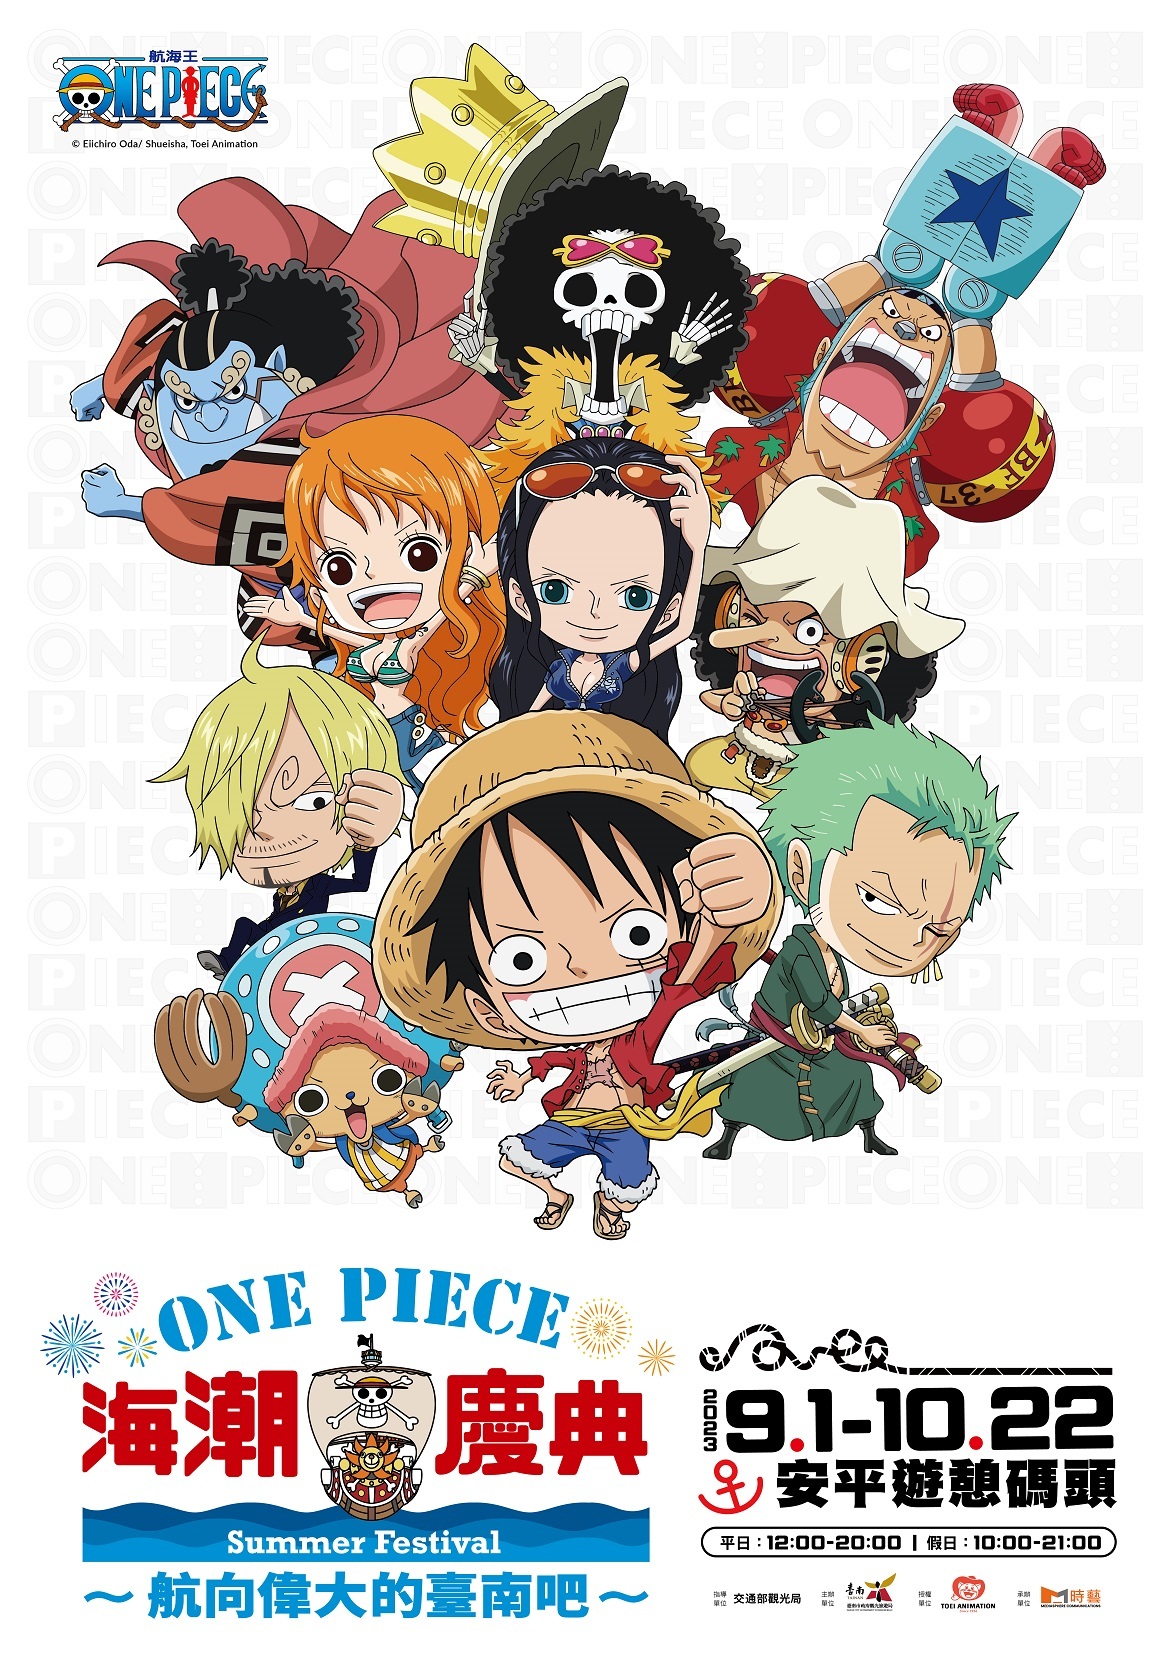 100 个One piece anime 点子